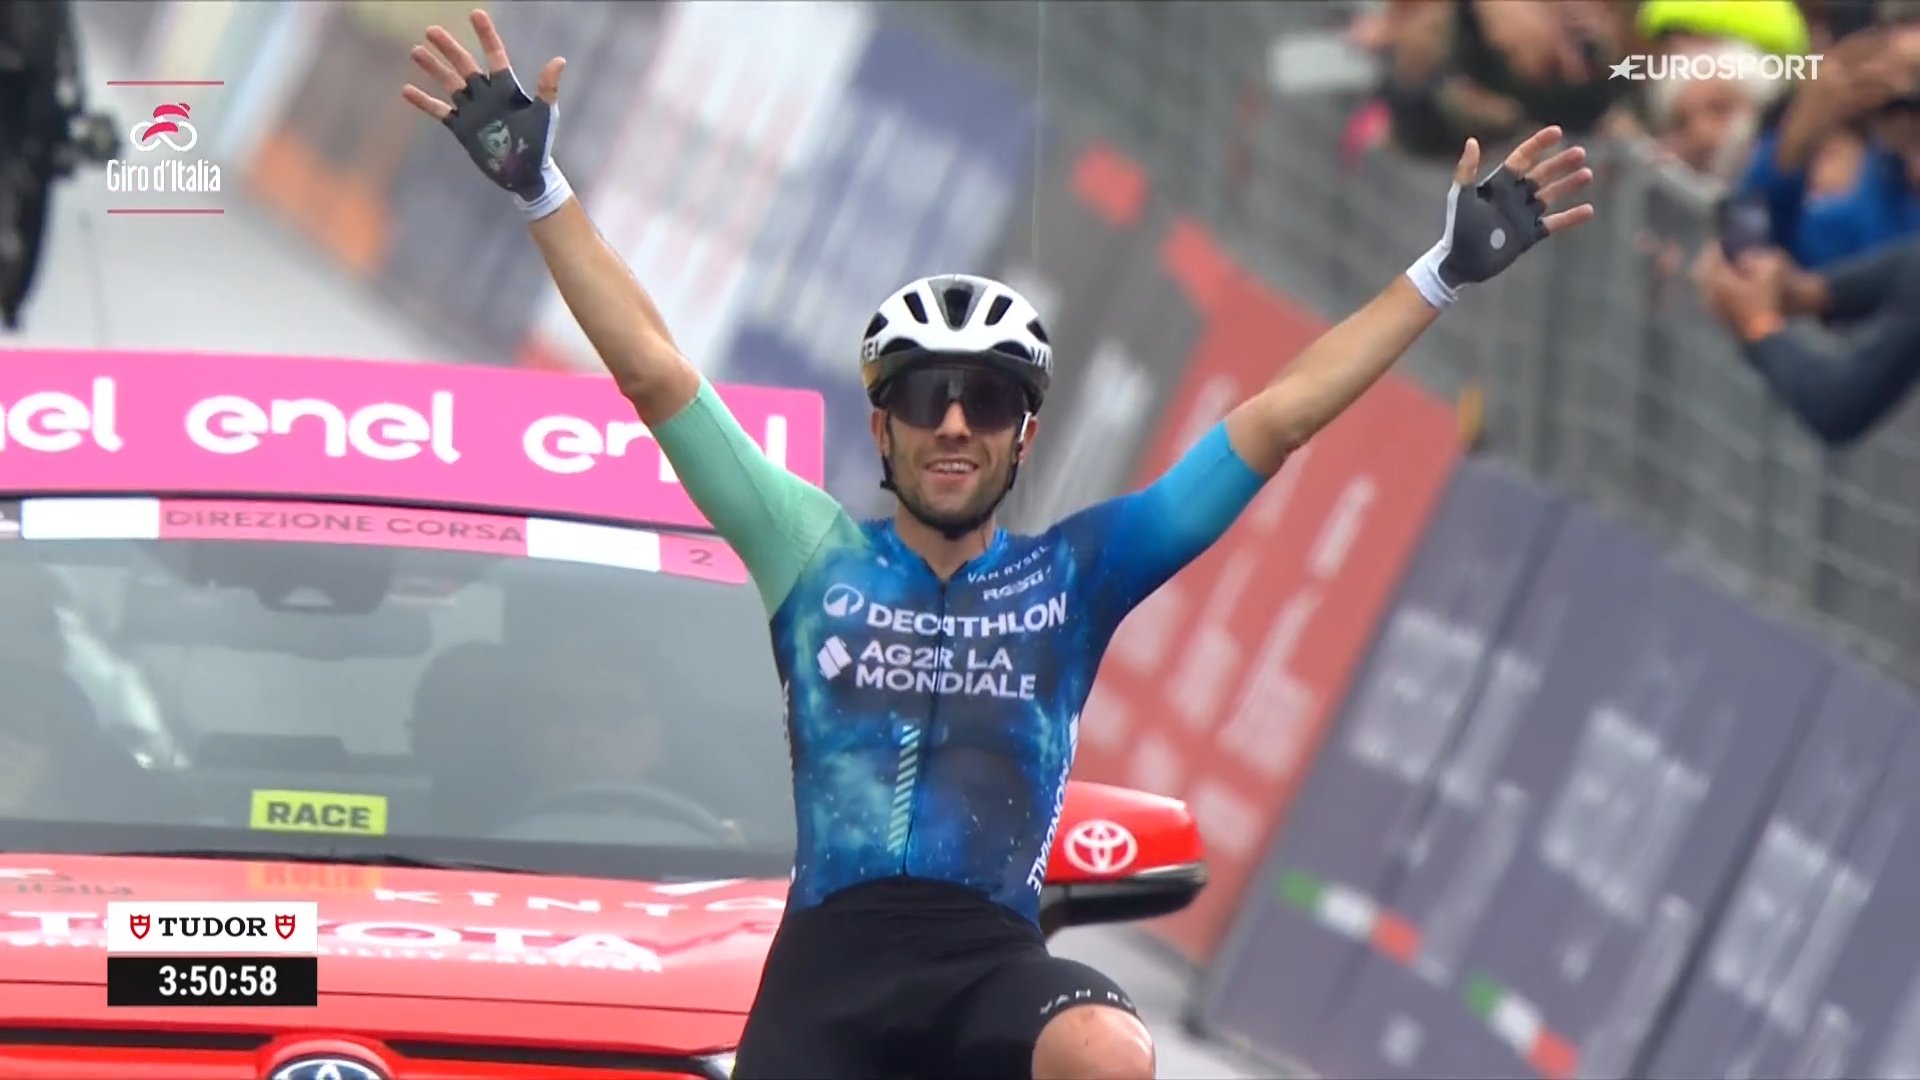 Classement de la 19ème étape du Tour d'Italie, remportée par Andrea Vendrame